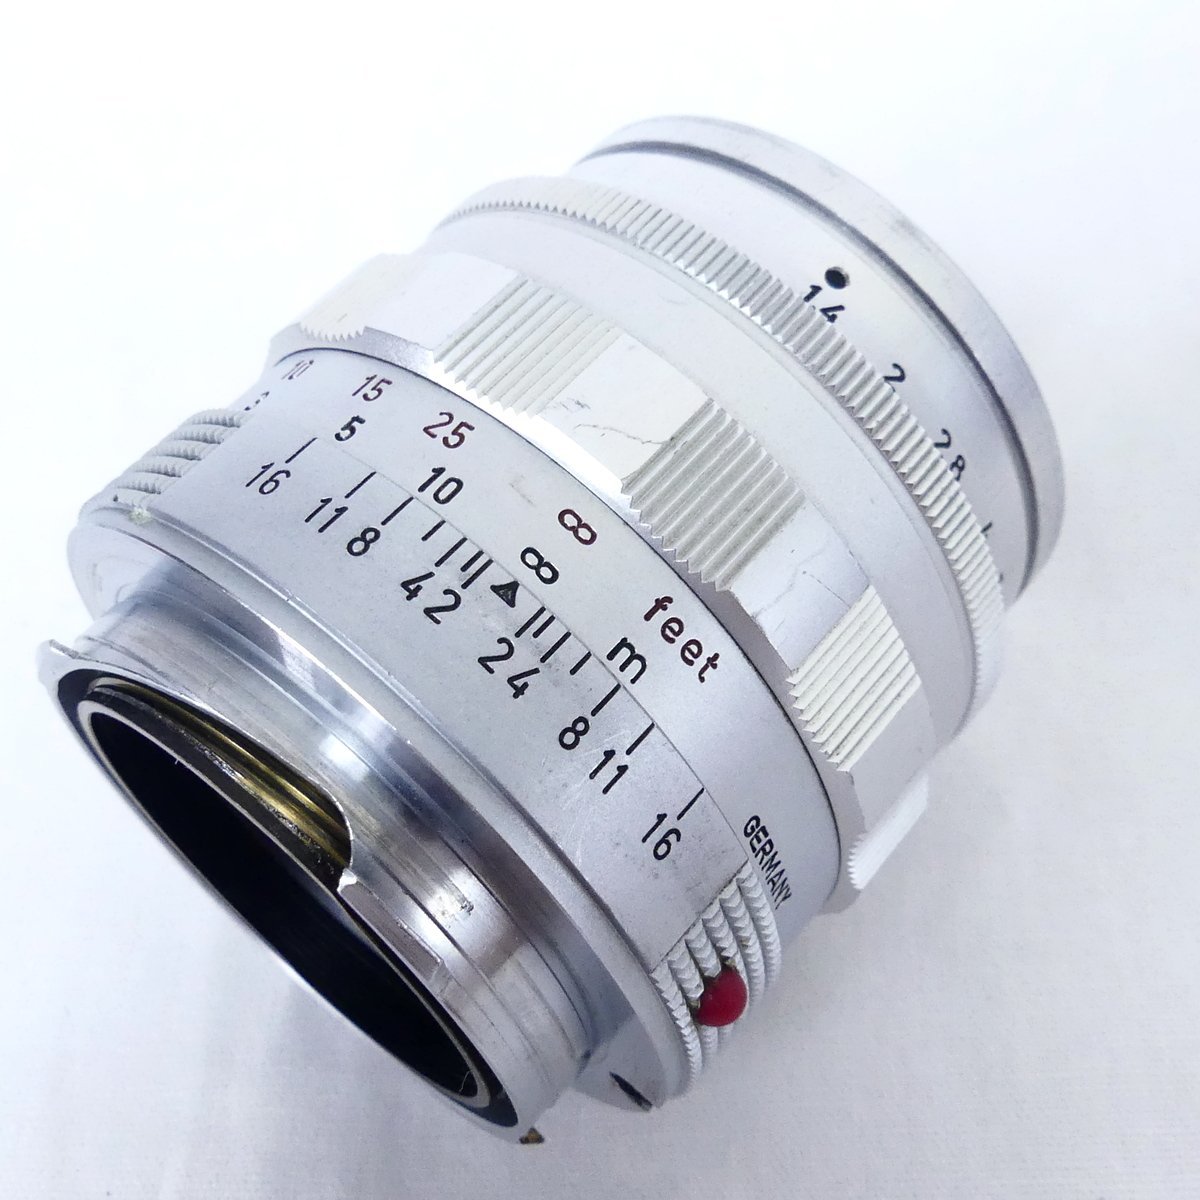 ライカ LEITZ WETZLAR SUMMILUX ズミルックス 50mm F1.4 カメラレンズ 166万番台 USED /2402C_画像2